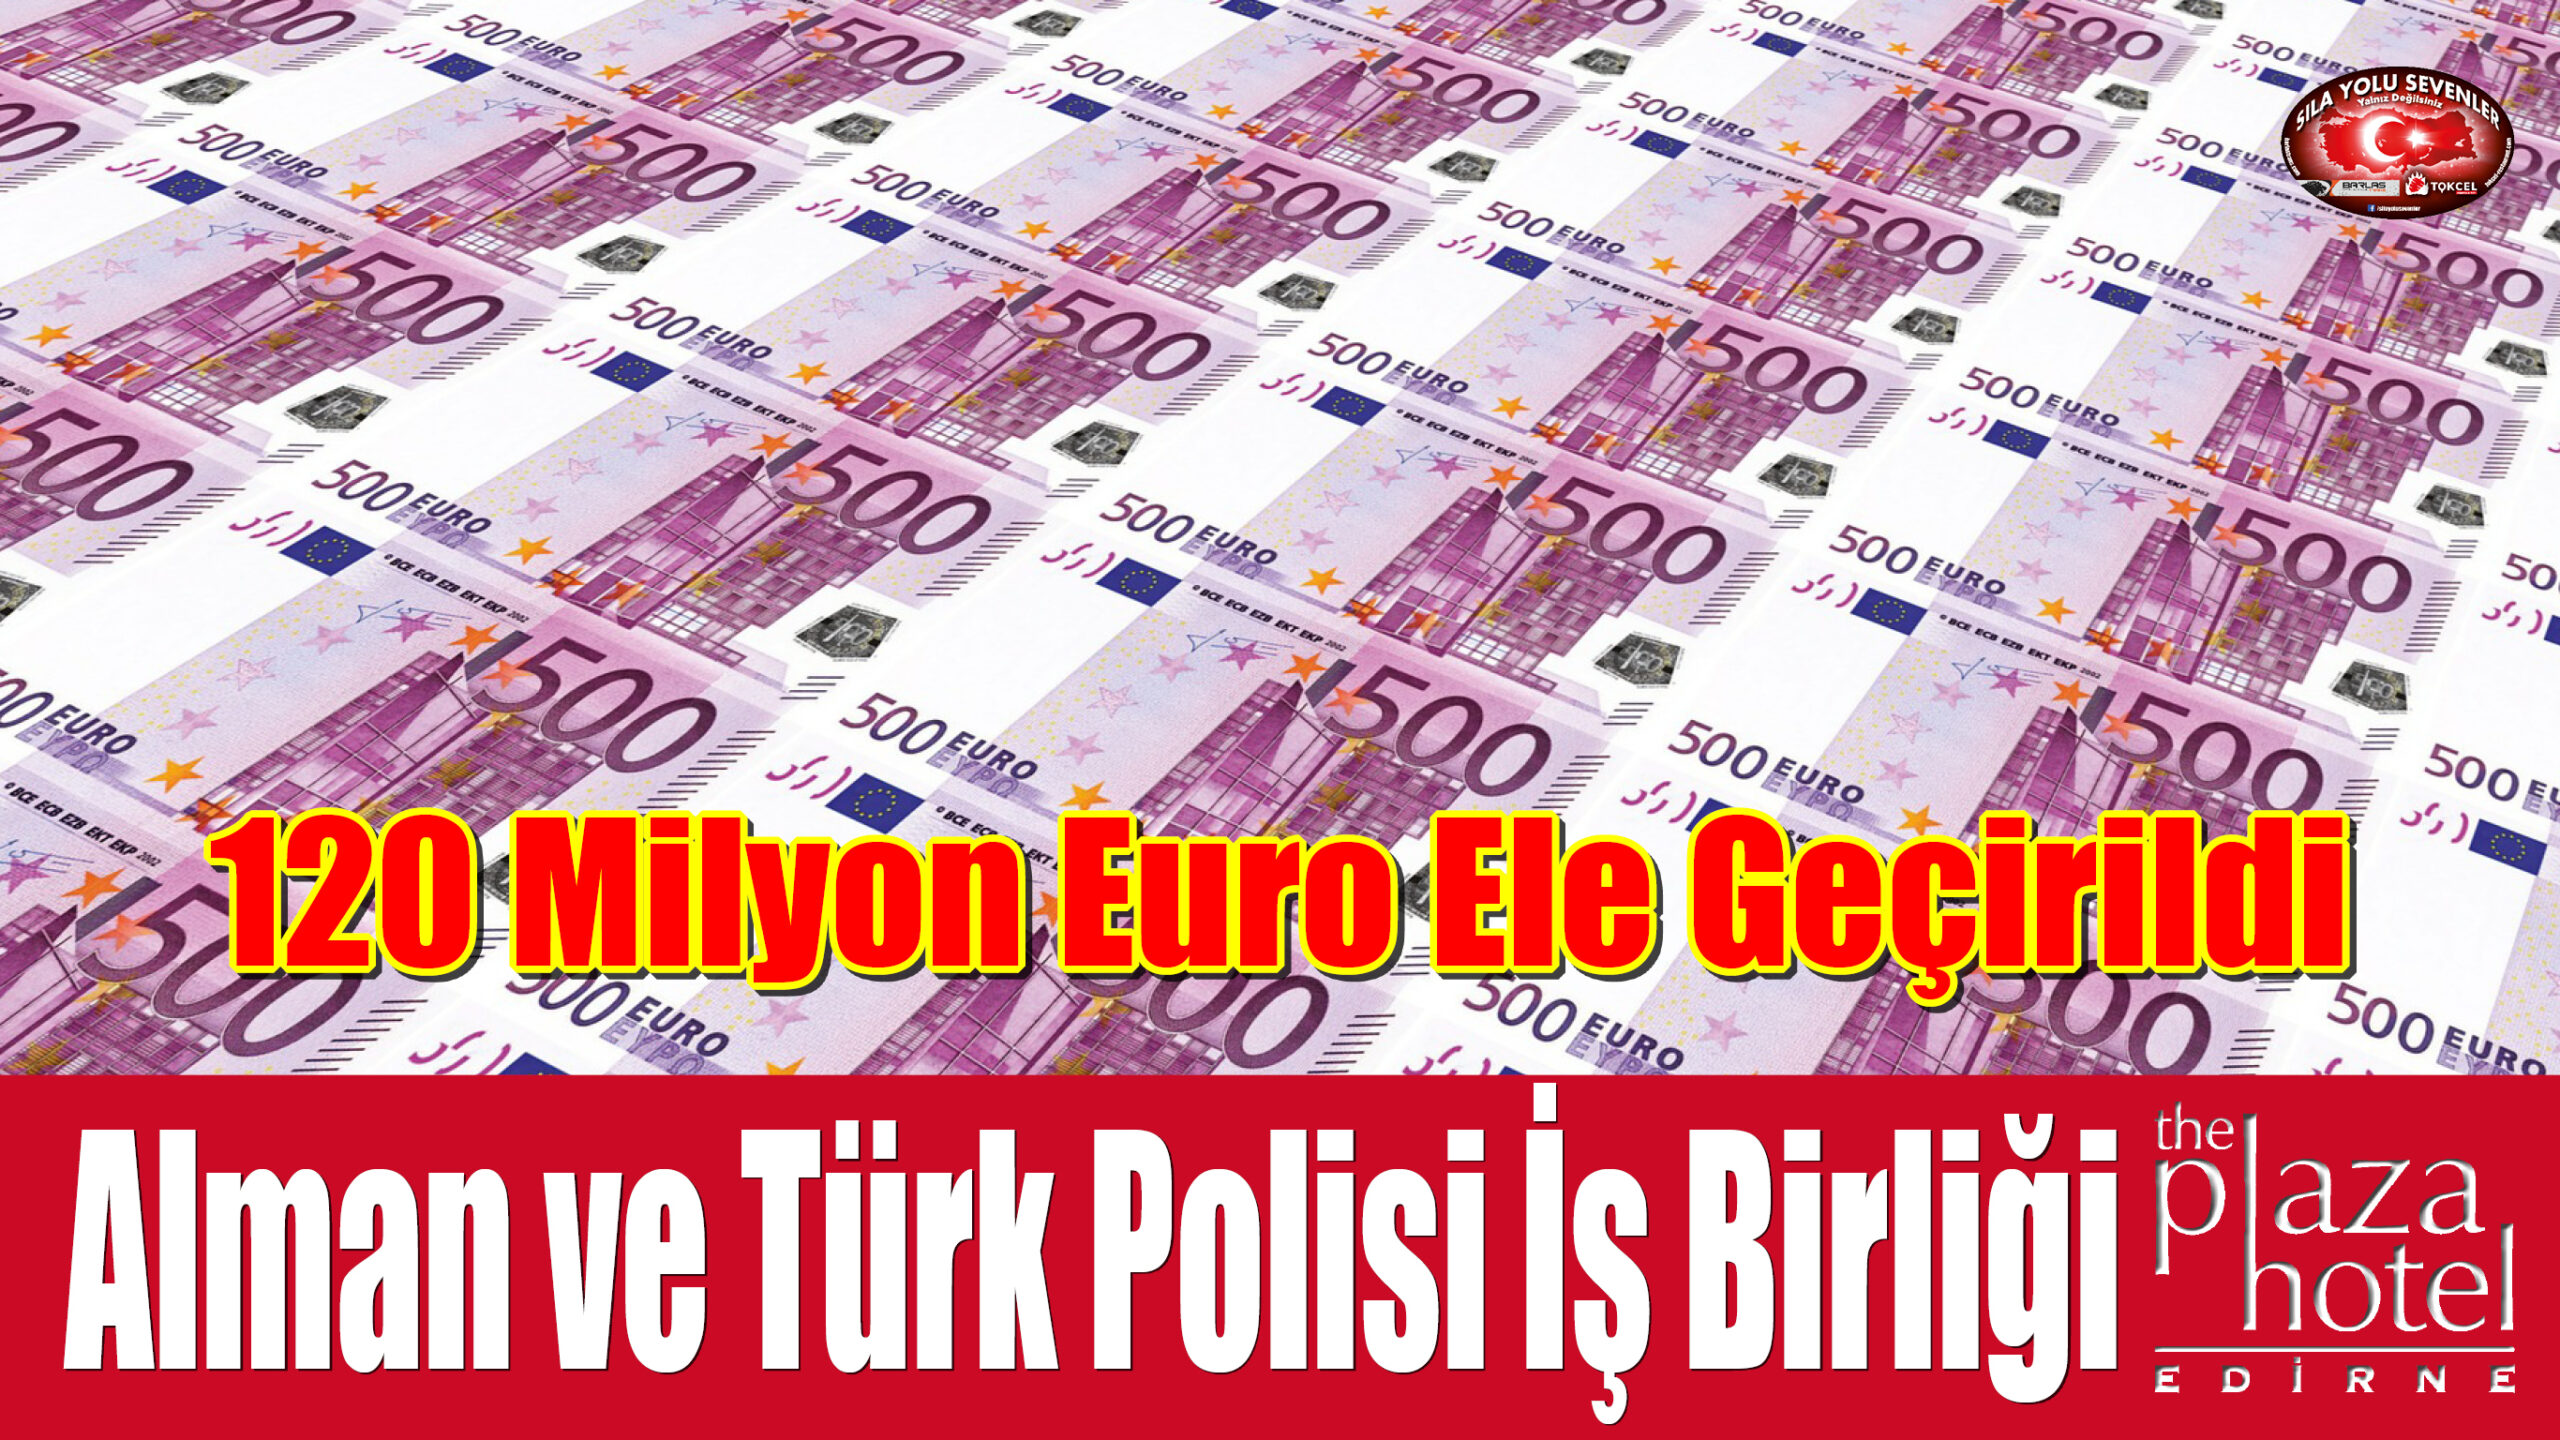 Alman ve Türk Polisi İş Birliği ile 120 Milyon Euro Ele Geçirildi